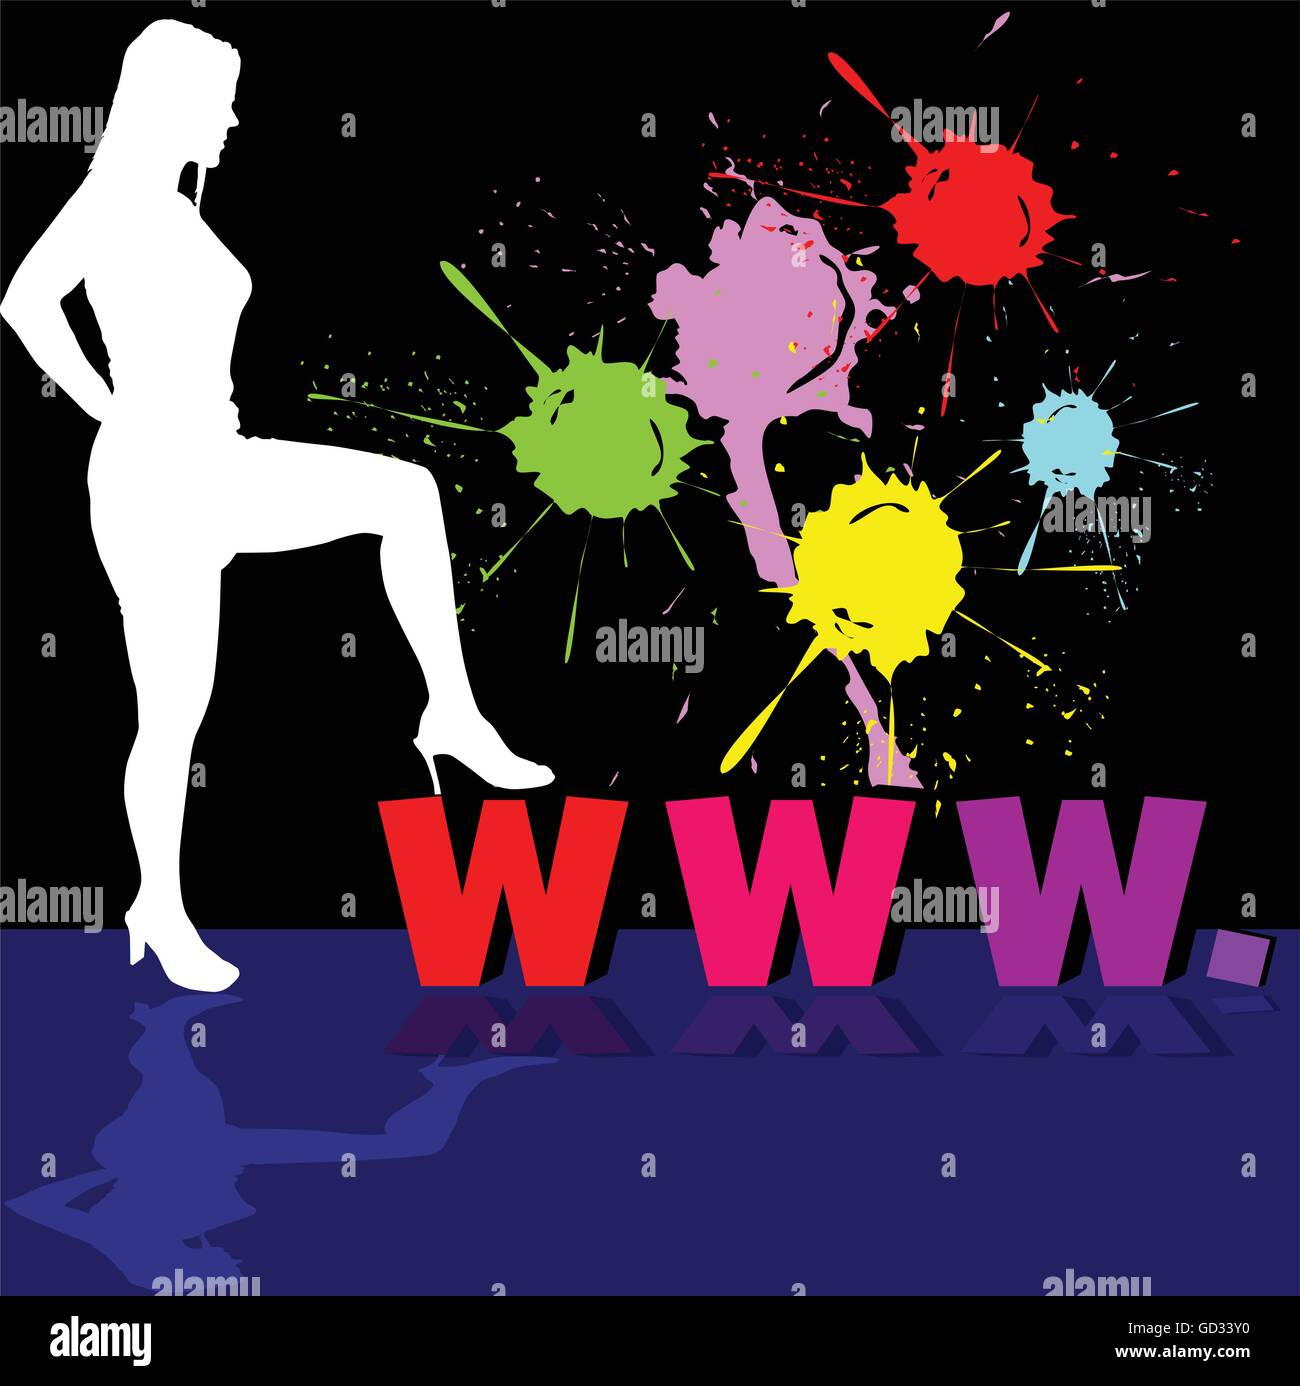 girl white silhouette and internet address illustration Stock Vector